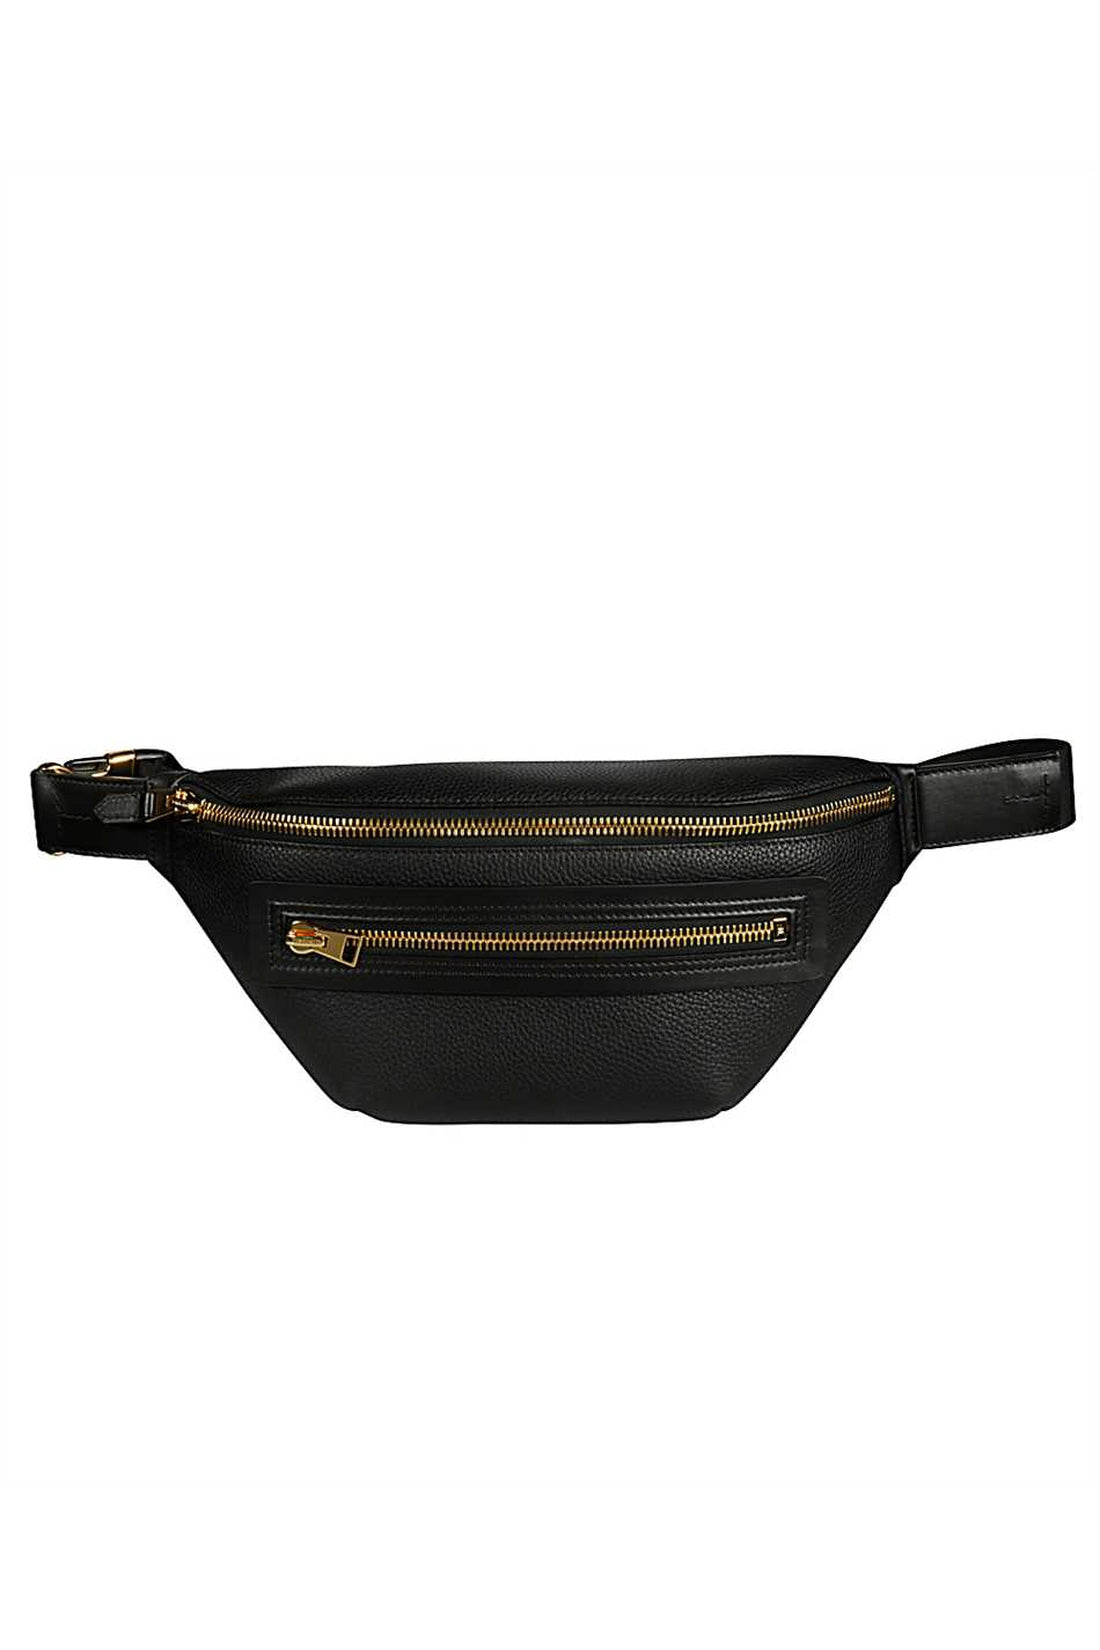 Tom Ford-OUTLET-SALE-Buckley leather belt bag-ARCHIVIST